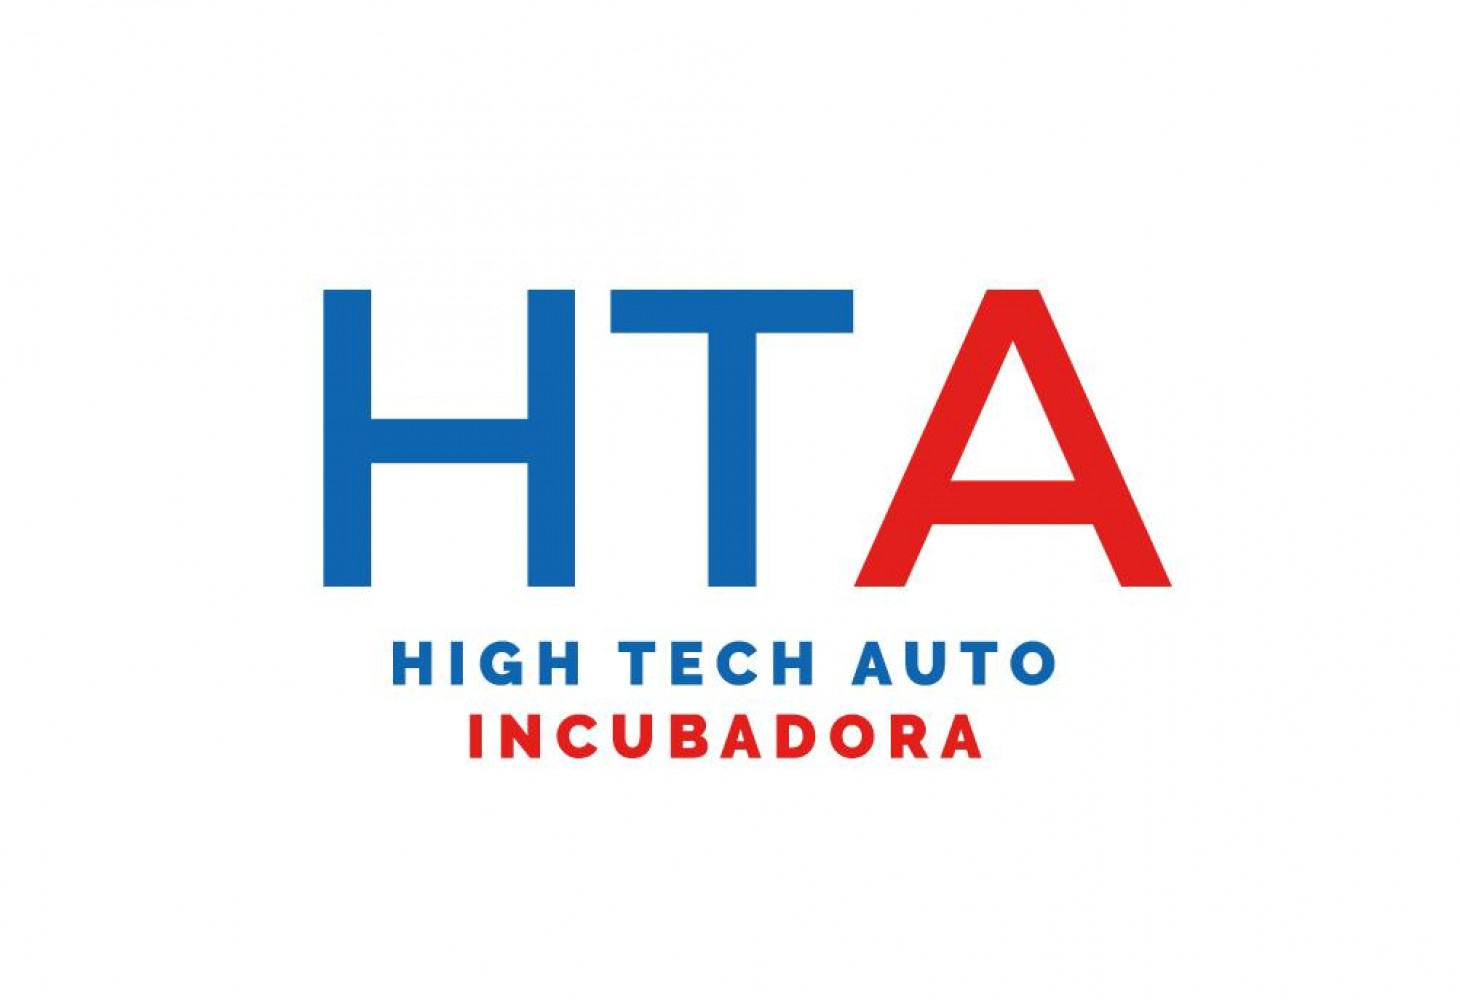 A incubadora High Tech Auto de Galicia. Proxectos seleccionados